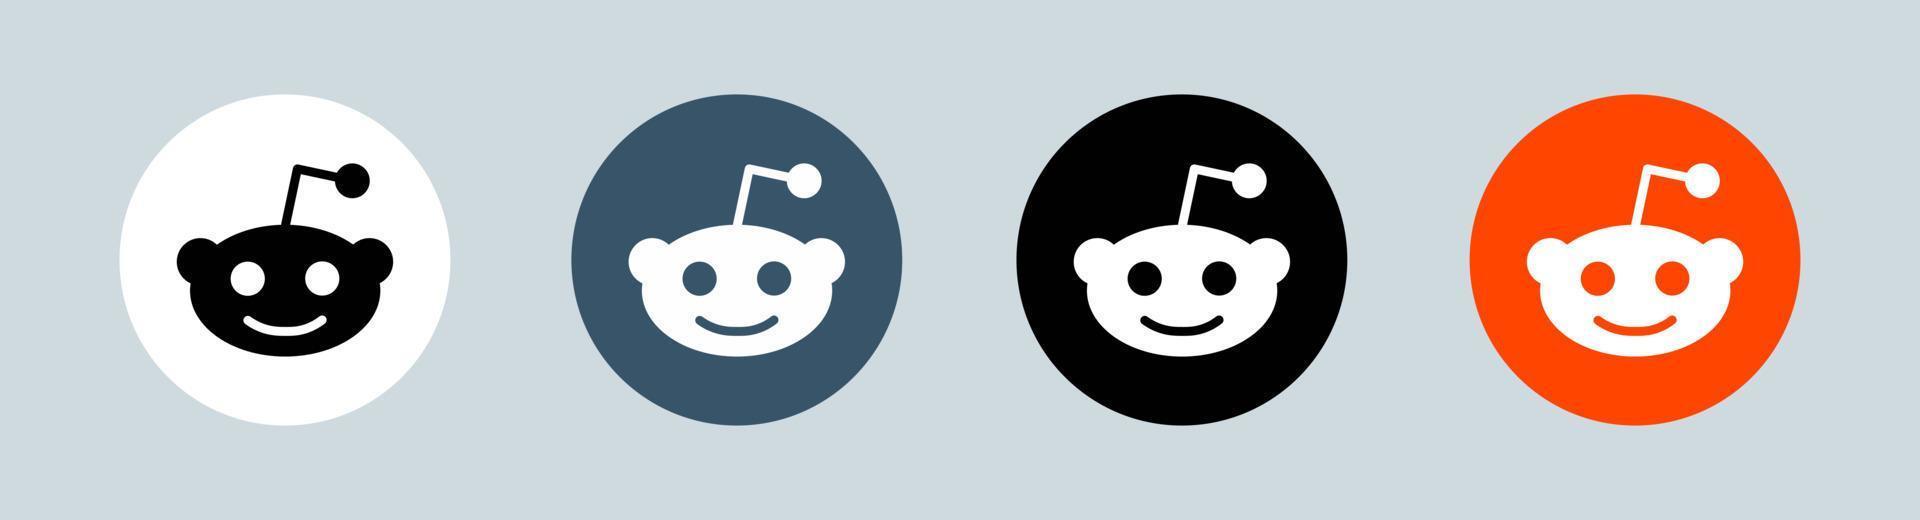 logotipo de reddit en círculo. Ilustración de vector de logotipo de redes sociales populares.